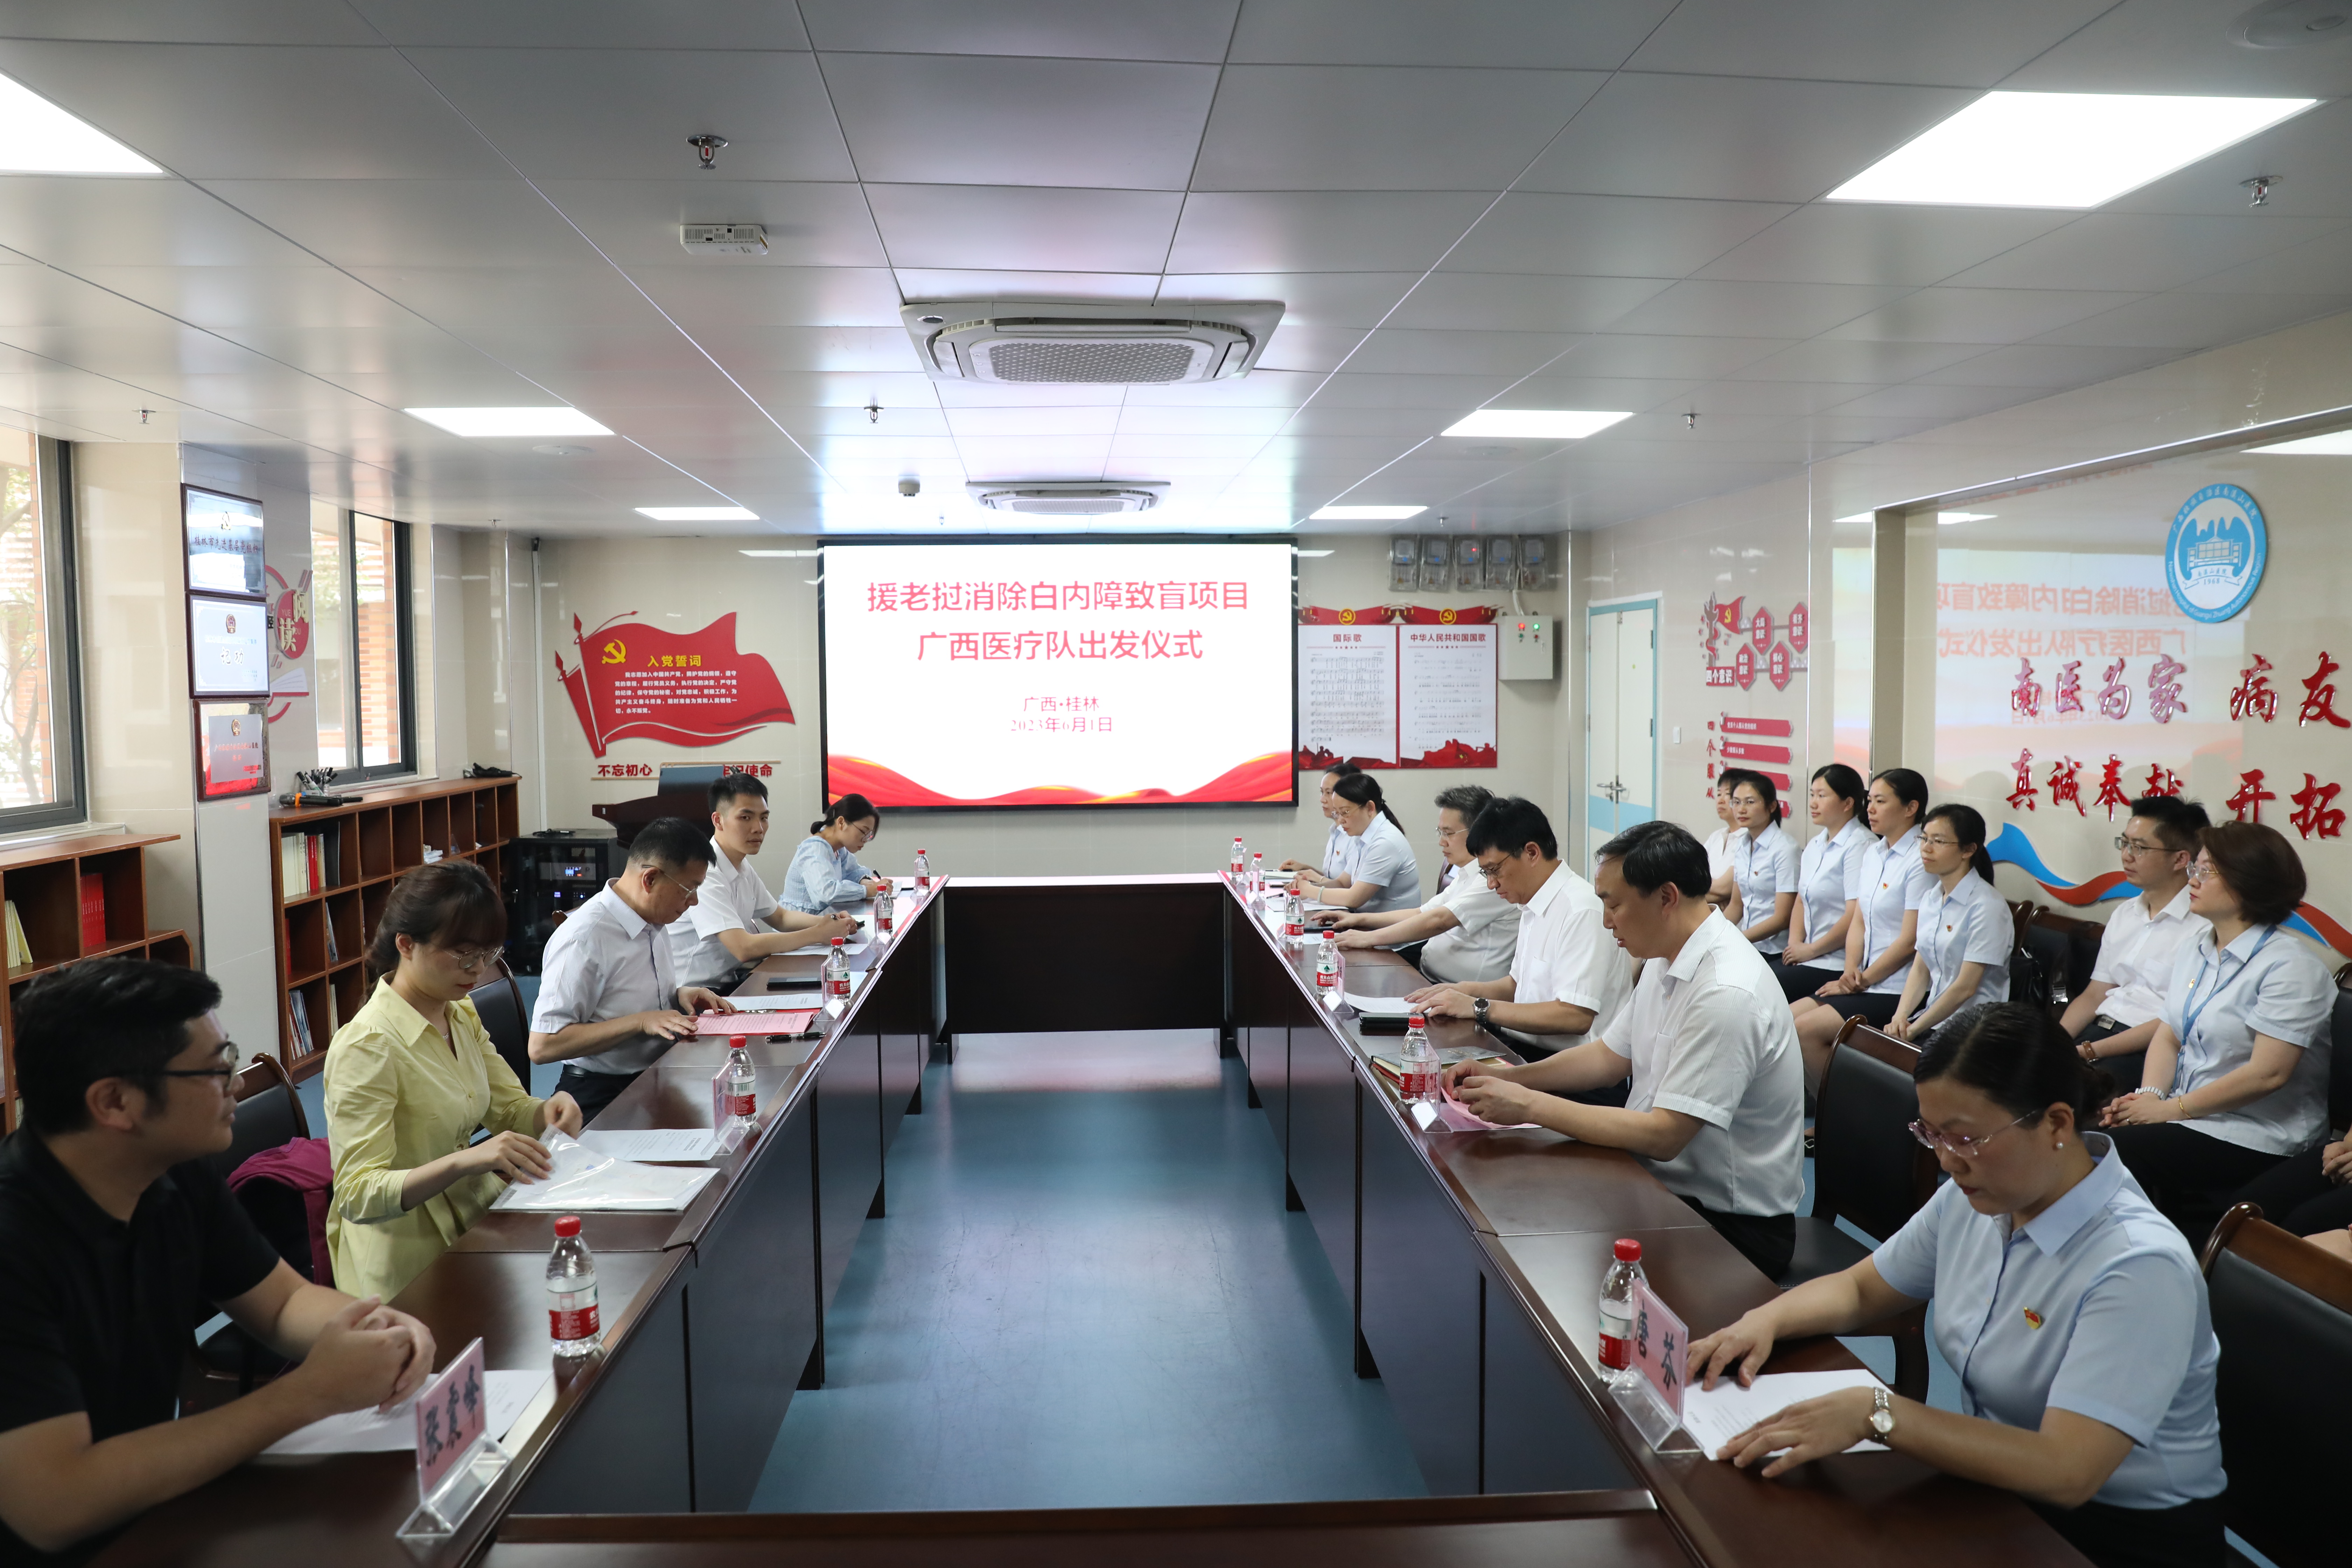 广西第三批援老挝「消除白内障致盲项目」医疗队出征